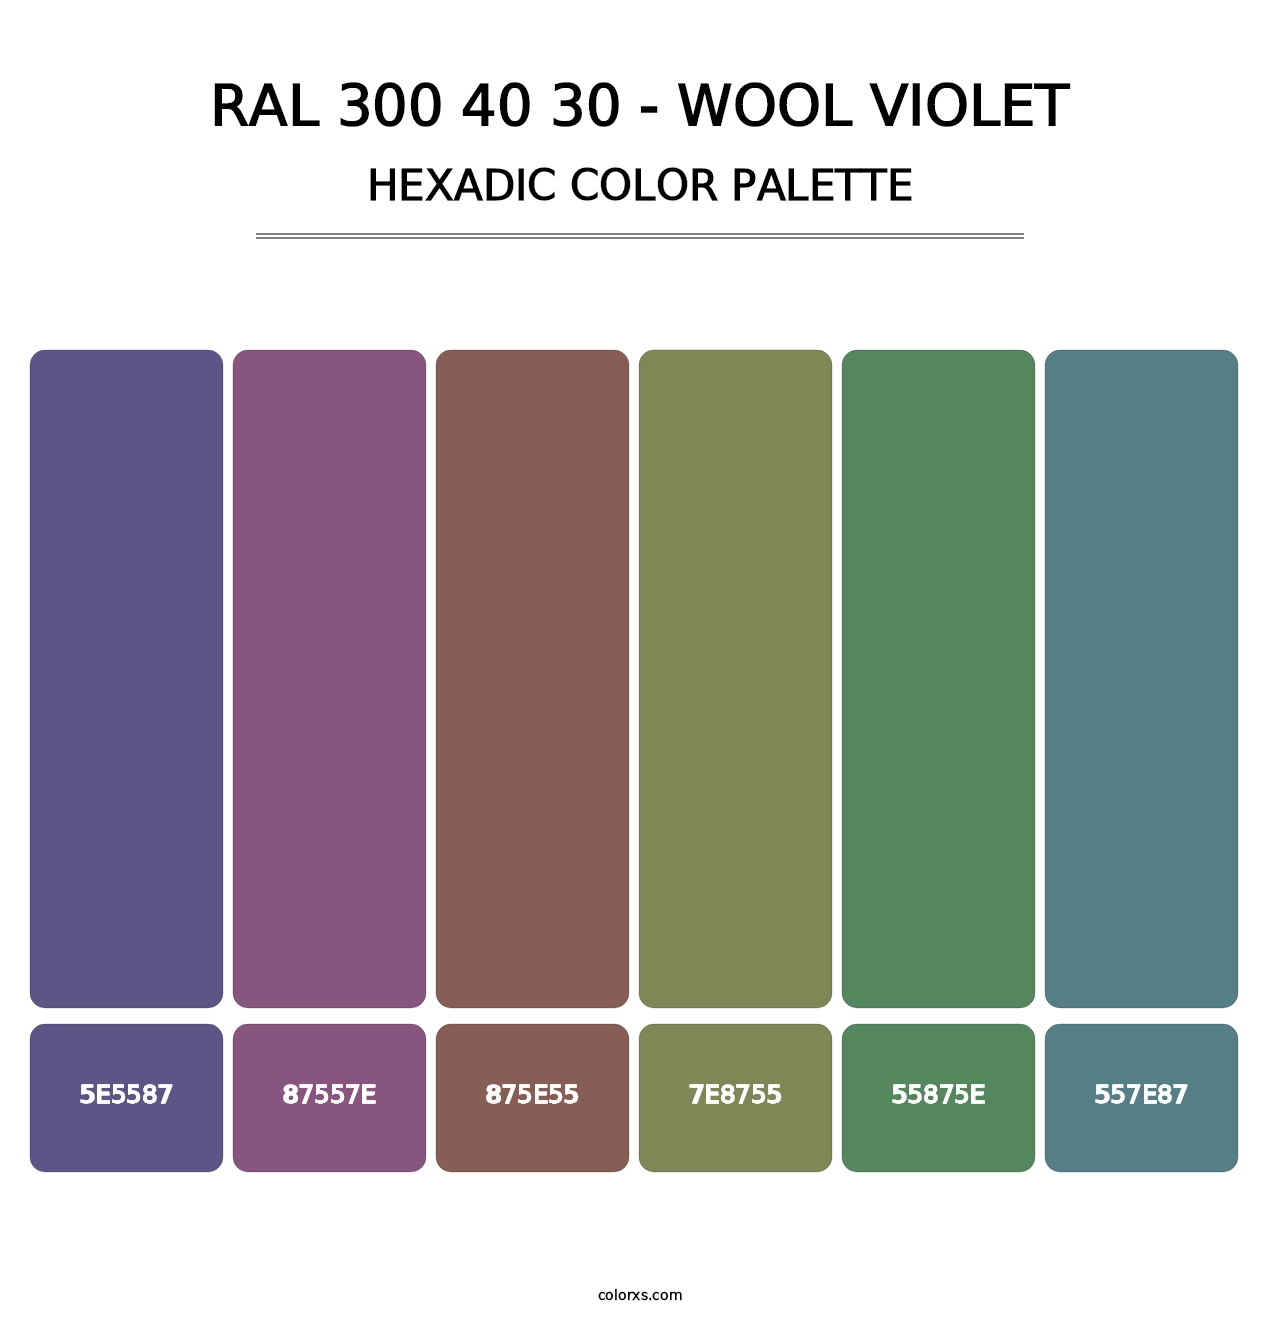 RAL 300 40 30 - Wool Violet - Hexadic Color Palette